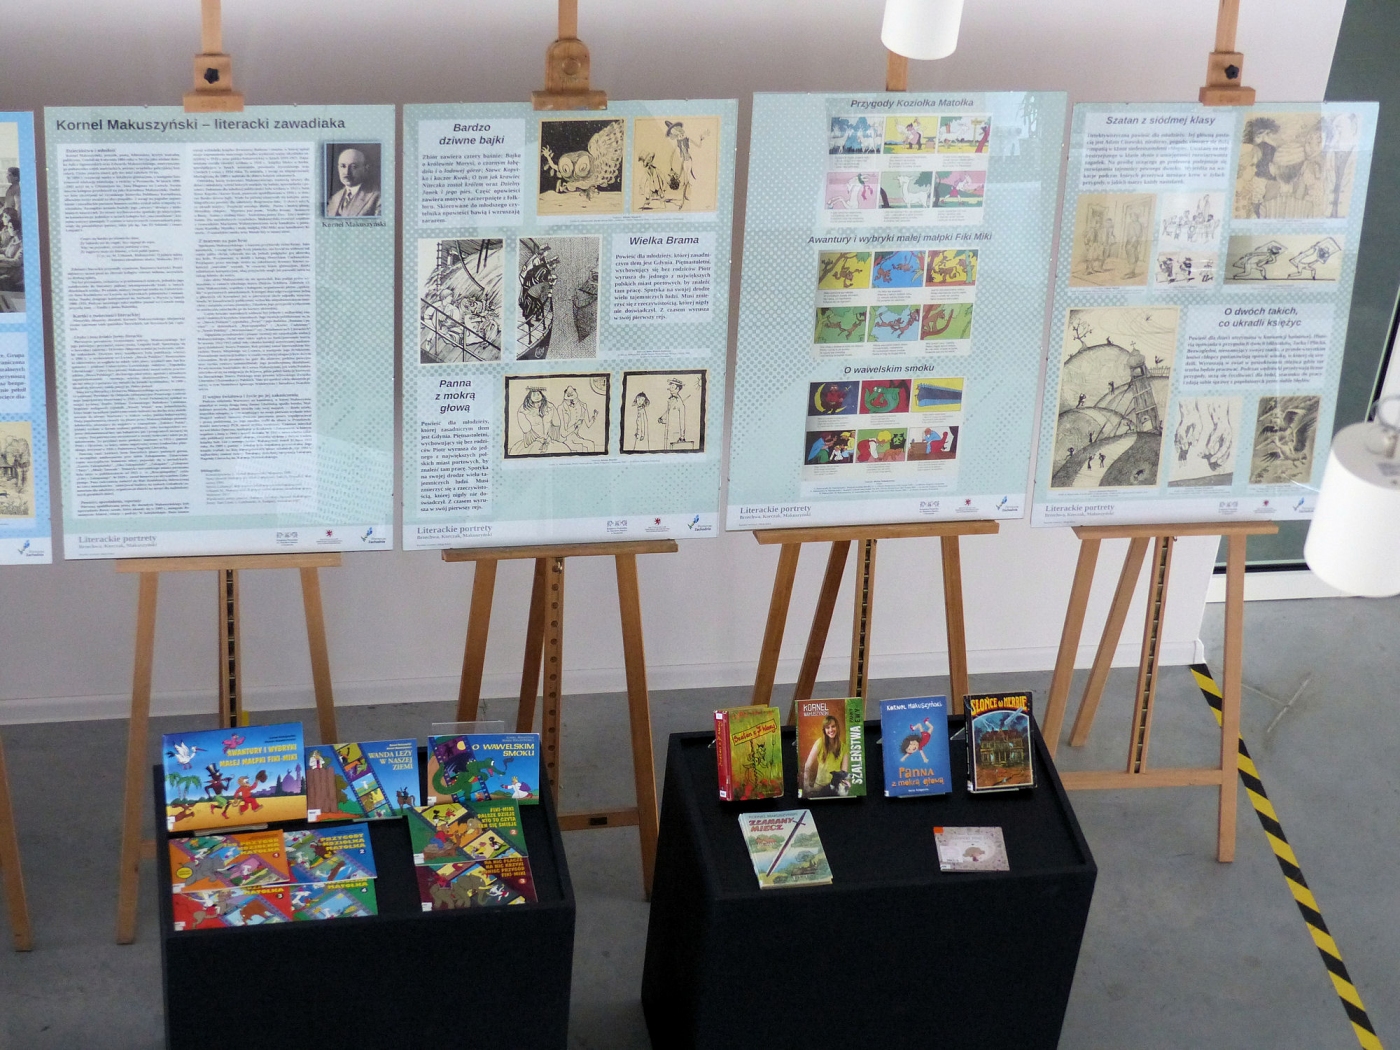 Sztalugi z informacjami dotyczącymi wystawy oraz rozłożone na stołach kolorowe okładki książek pisarzy